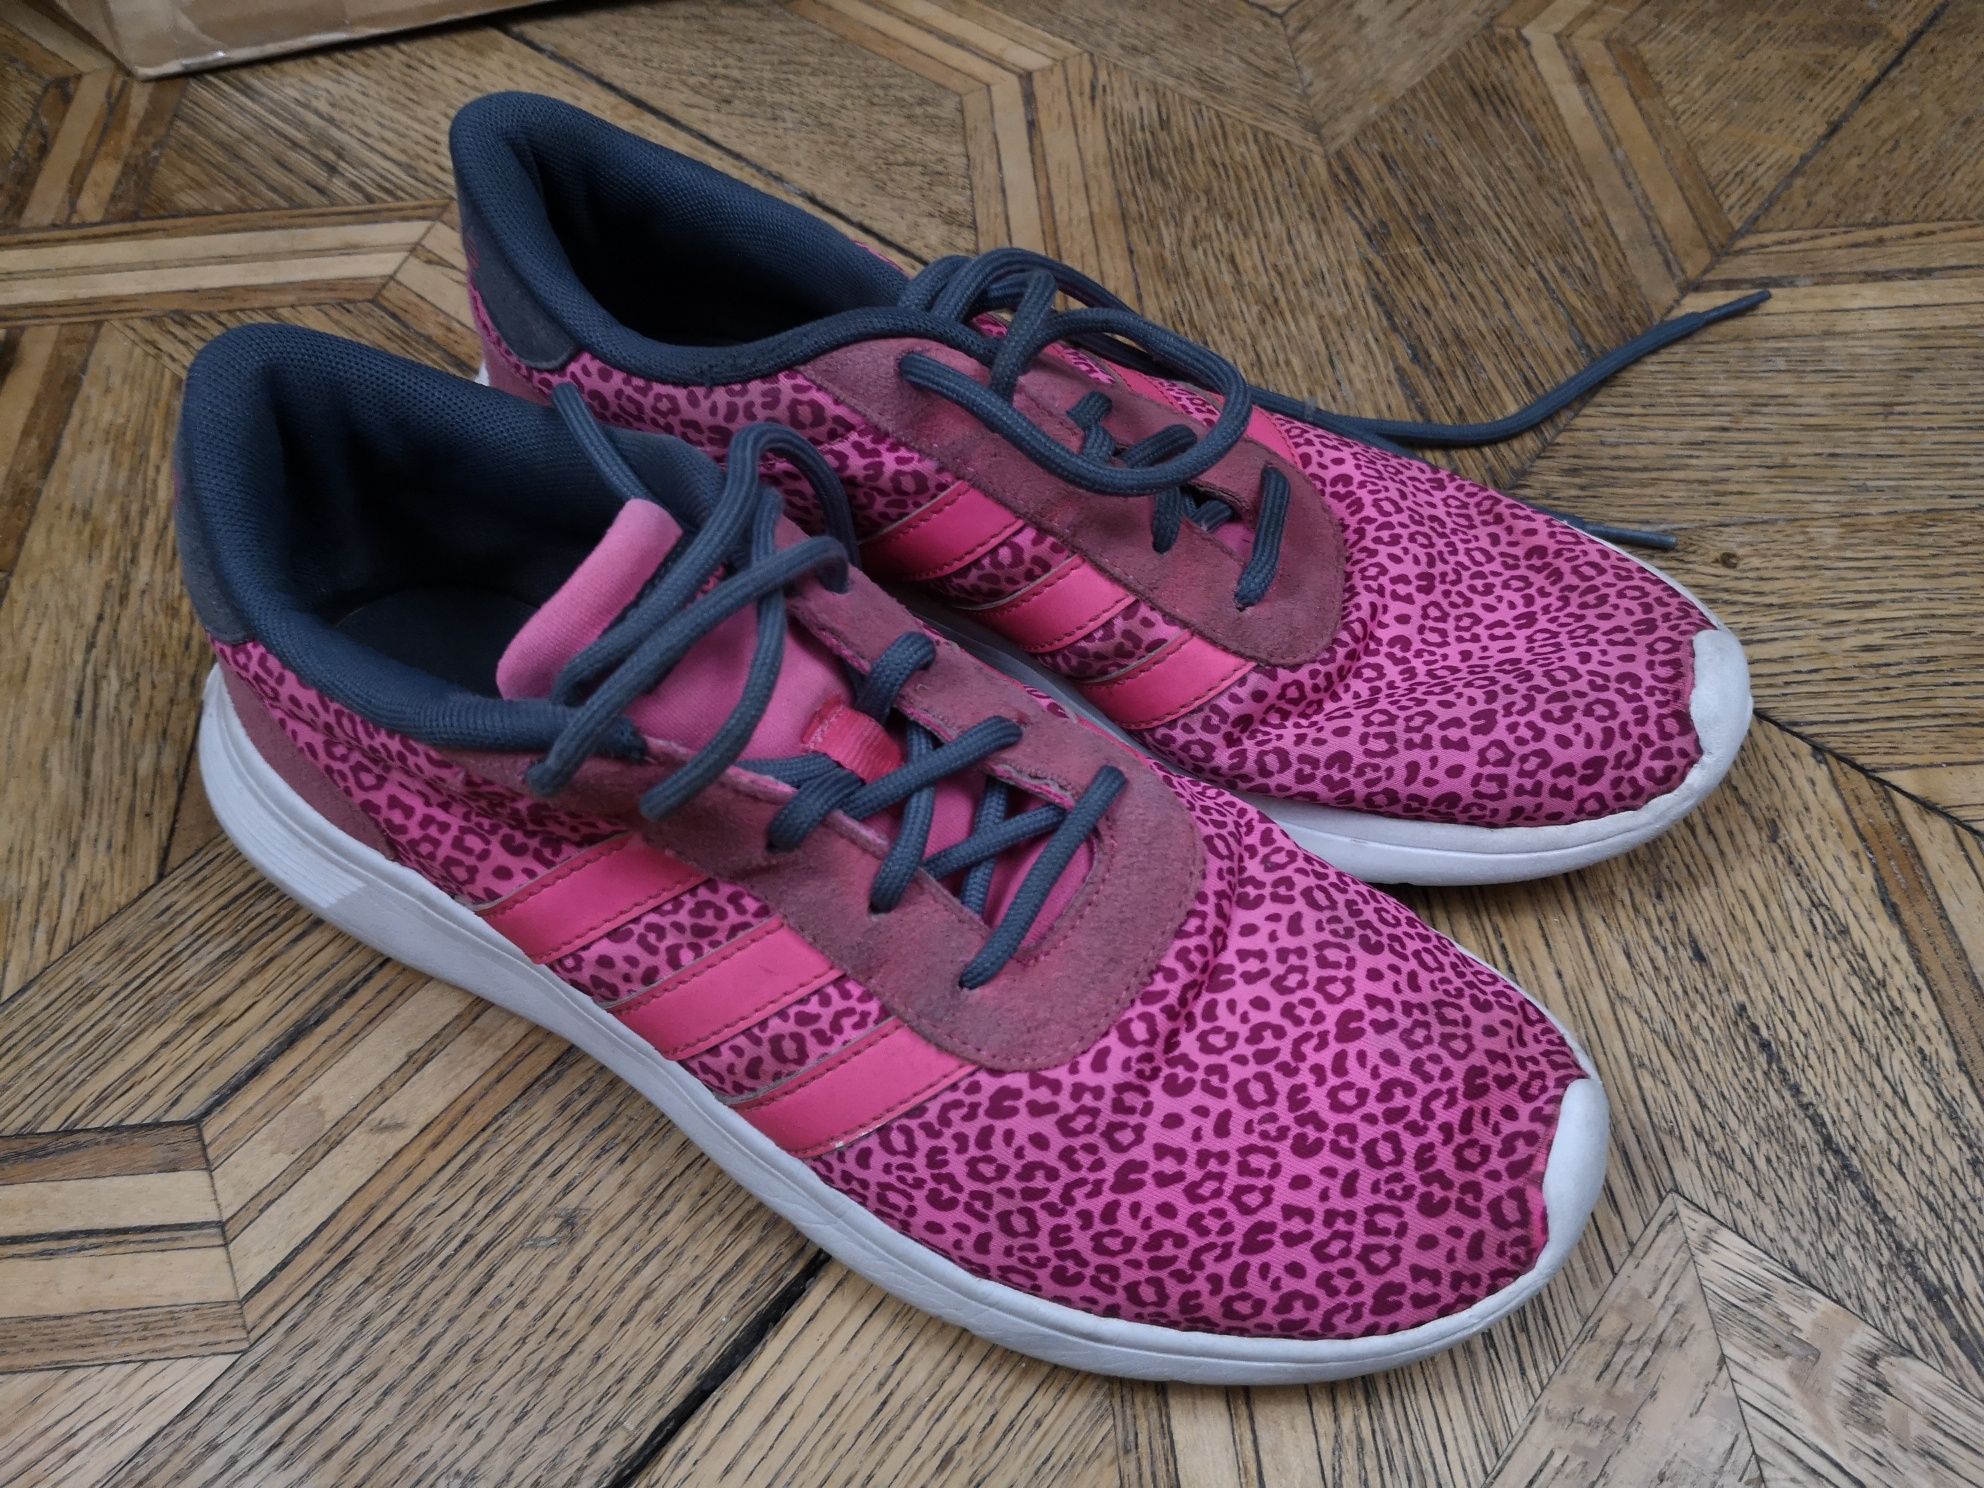 Adidas buty różowe w panterkę NEO Label rozm. 40 unisex męskie damsk